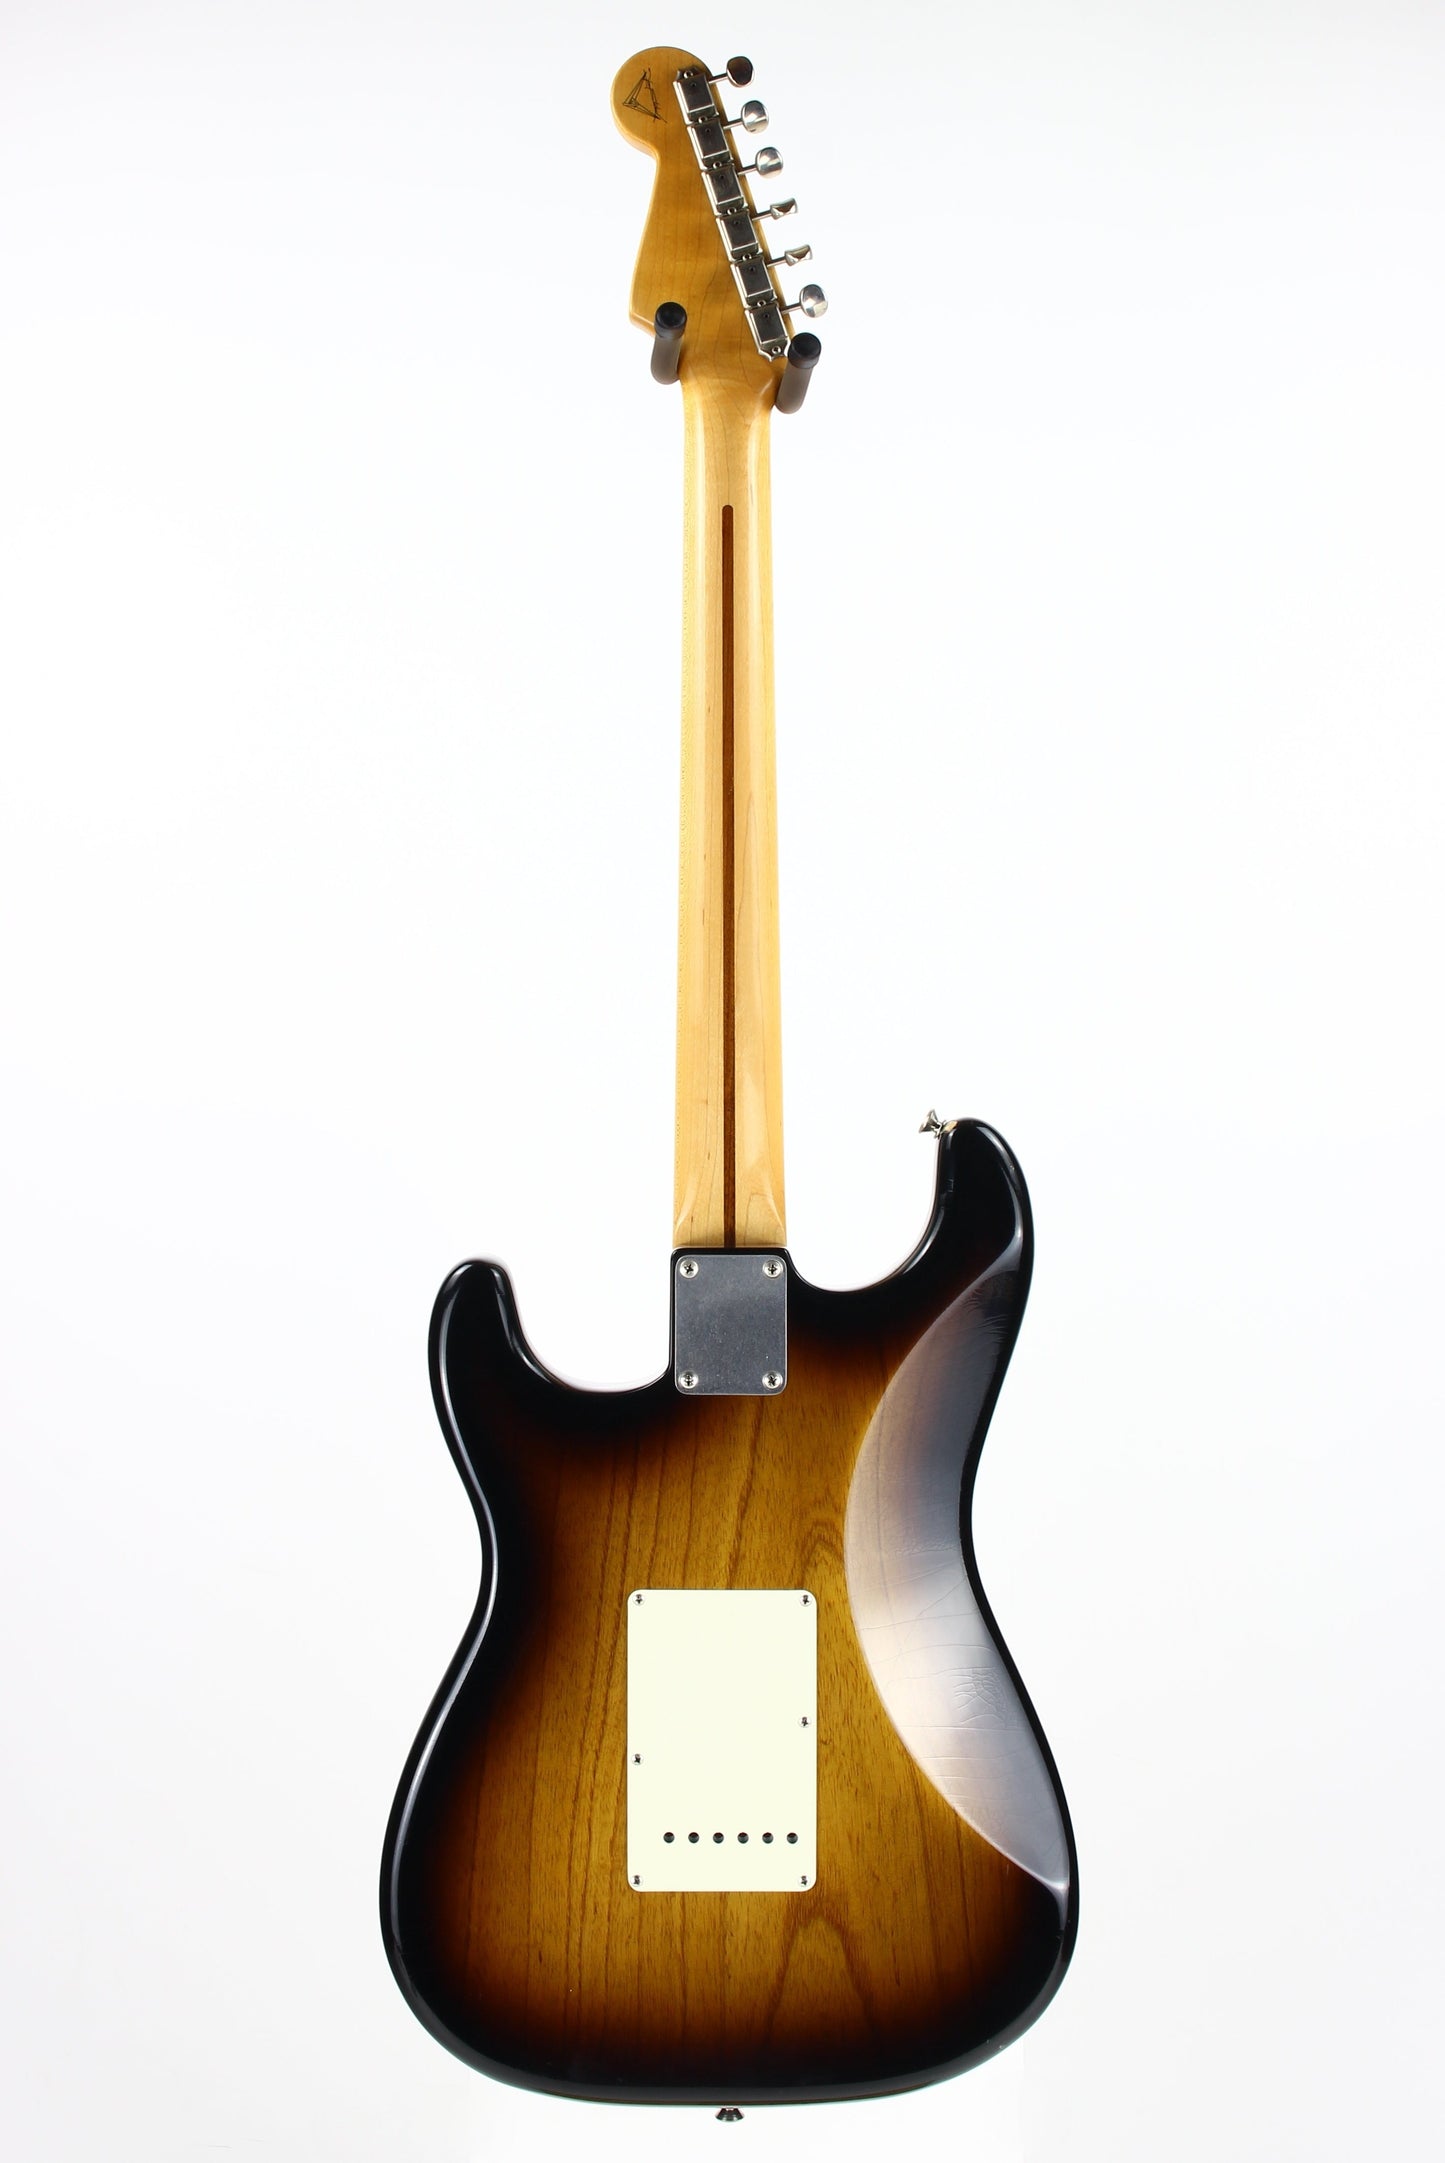 2004 Fender Masterbuilt '54 Stratocaster YURIY SHISHKOV 50th Anniversary Custom Shop Strat 1954